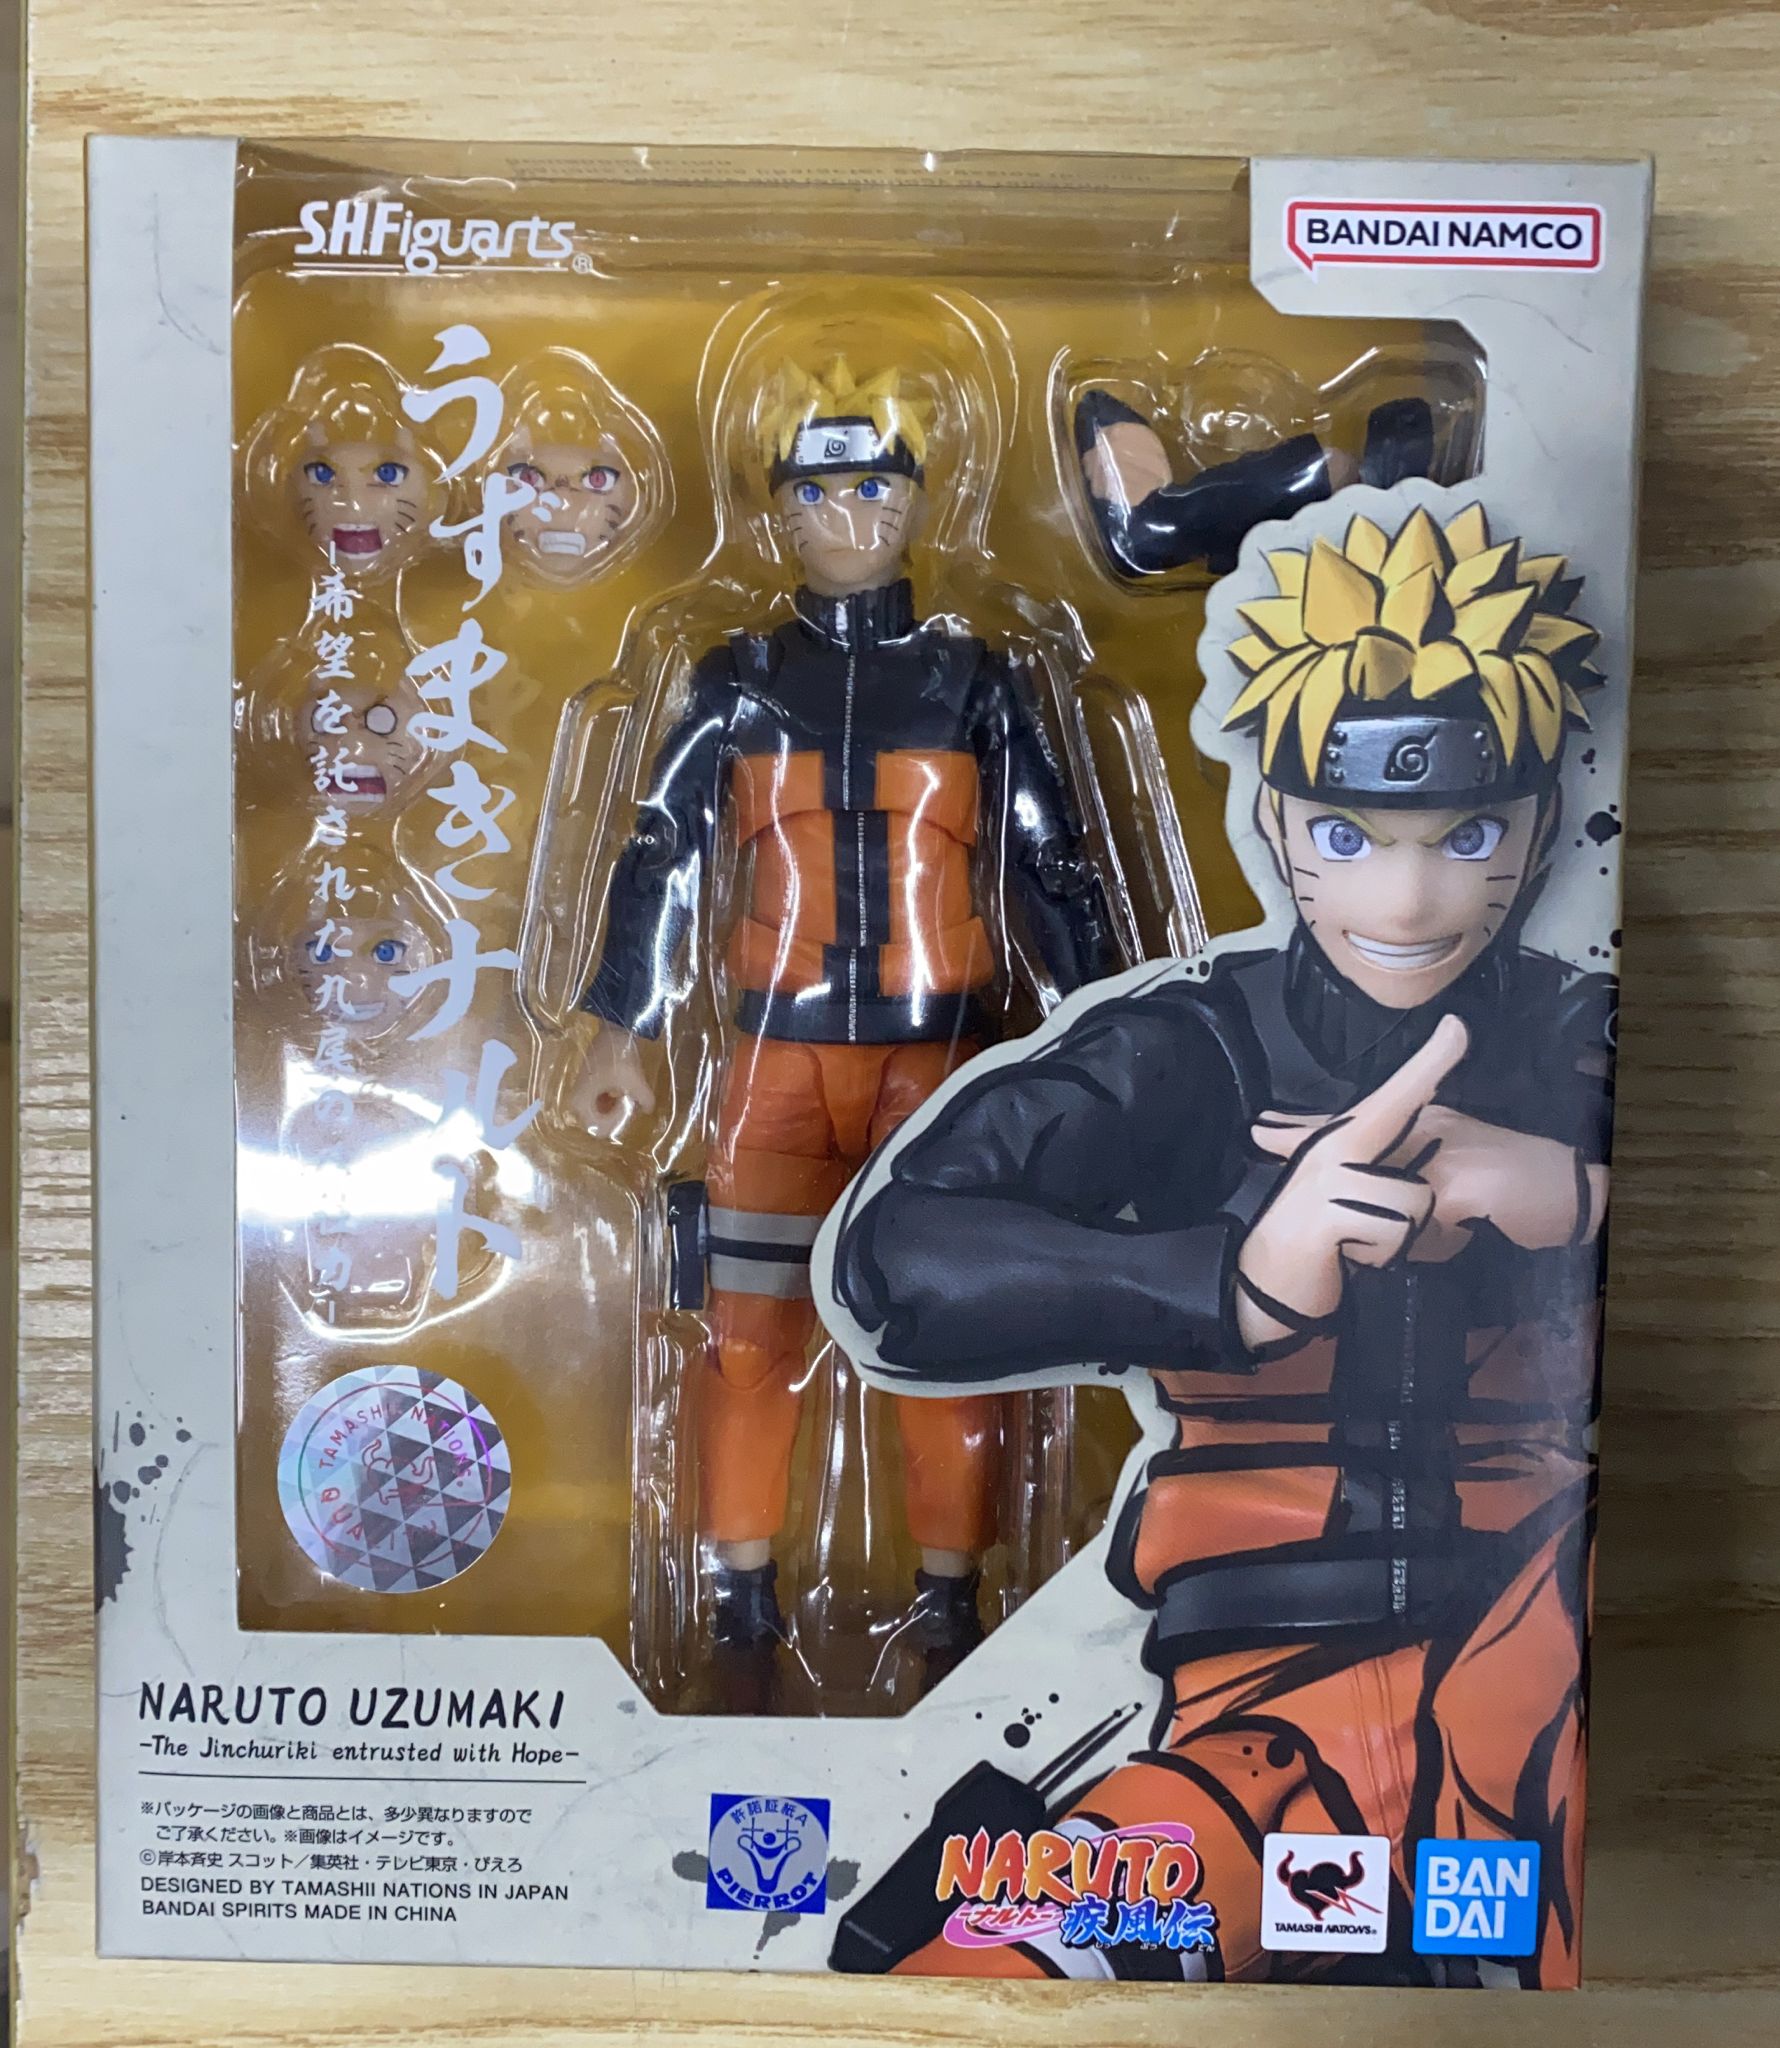 Figurine S.h.figuarts - Naruto - Uzumaki Jinchuuriki